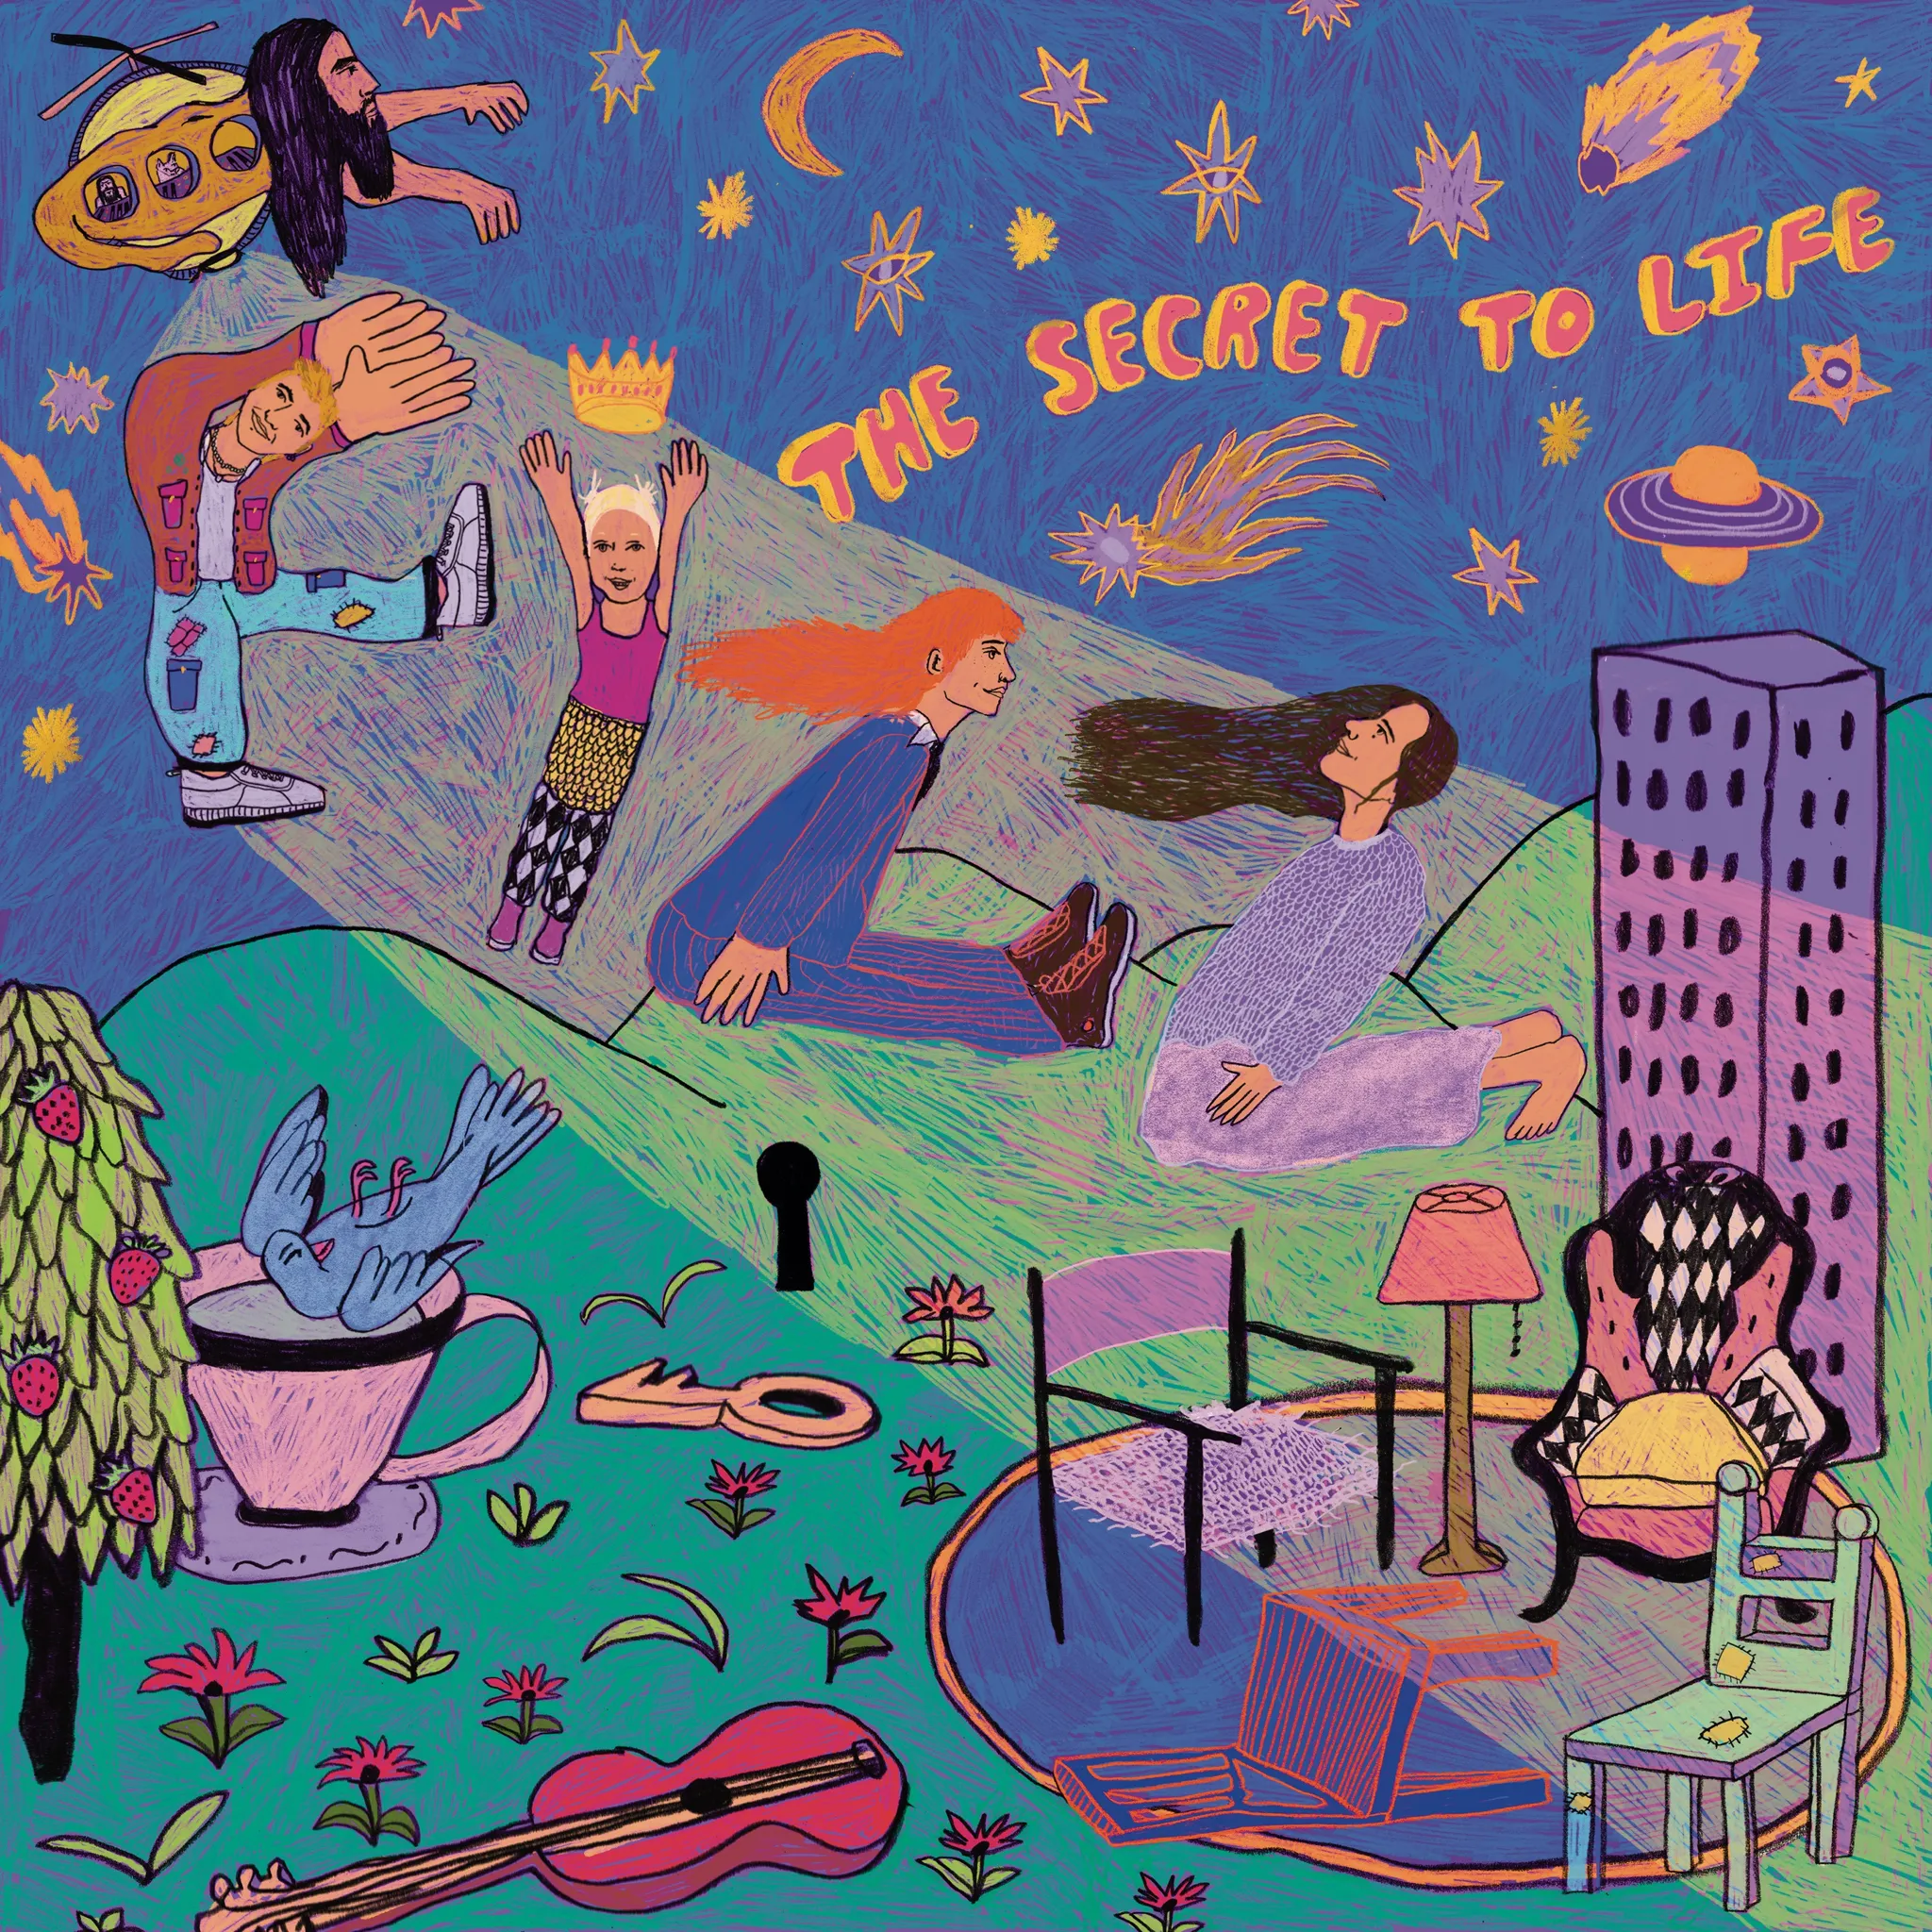 Buy The Secret To Life via Rough Trade